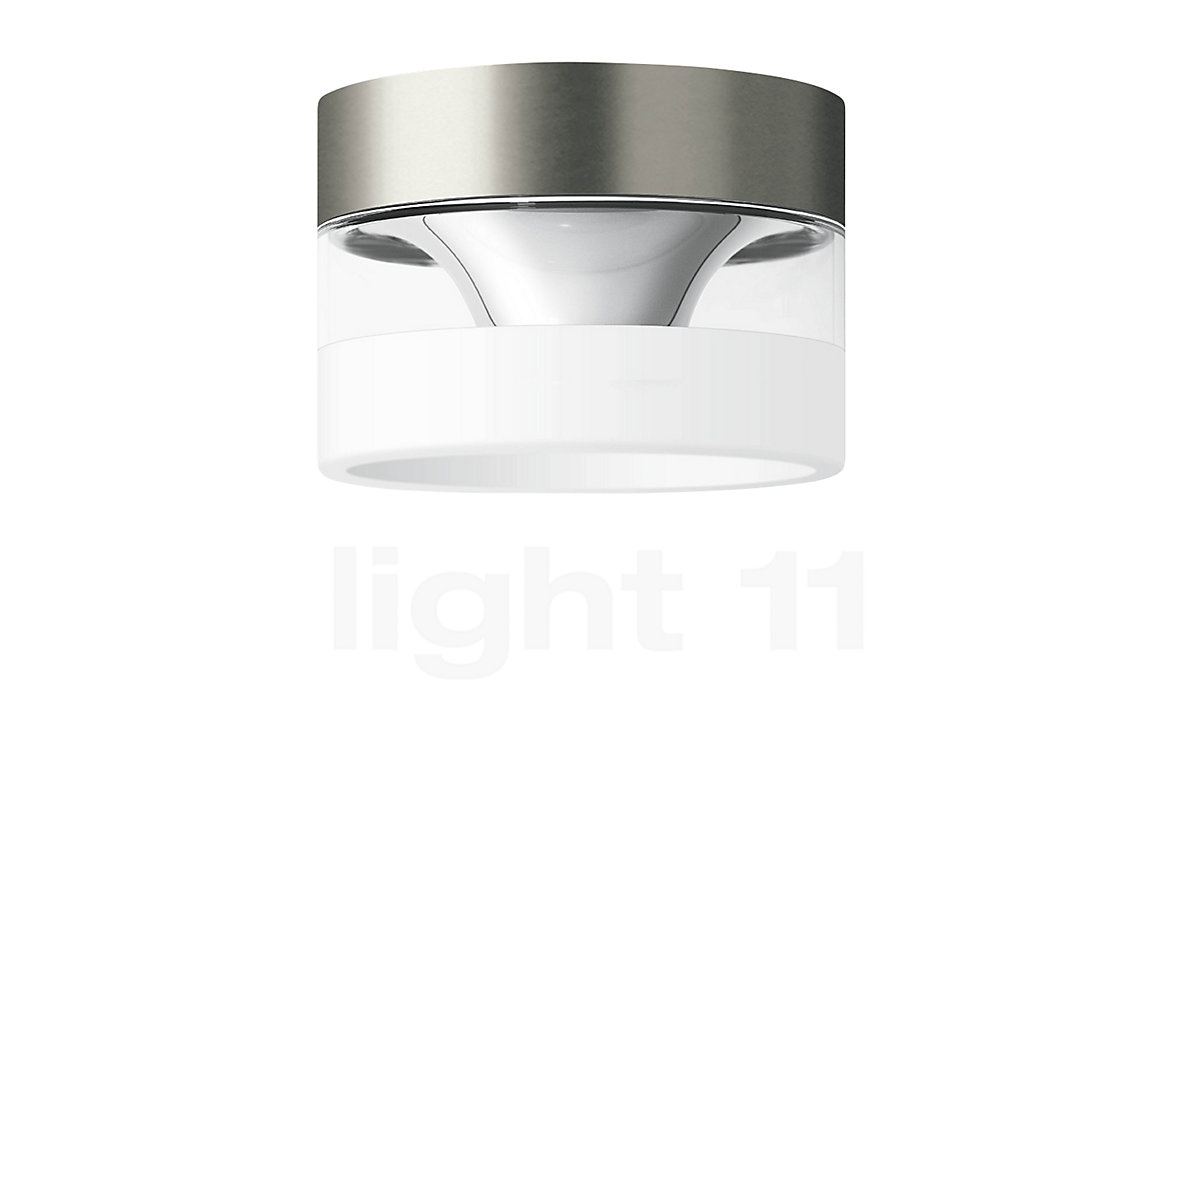 LED Ceiling Lamp Ceiling Spot Spotlight Ceiling Lamp 9 Watt 510 Lumen 60 cm approx. 